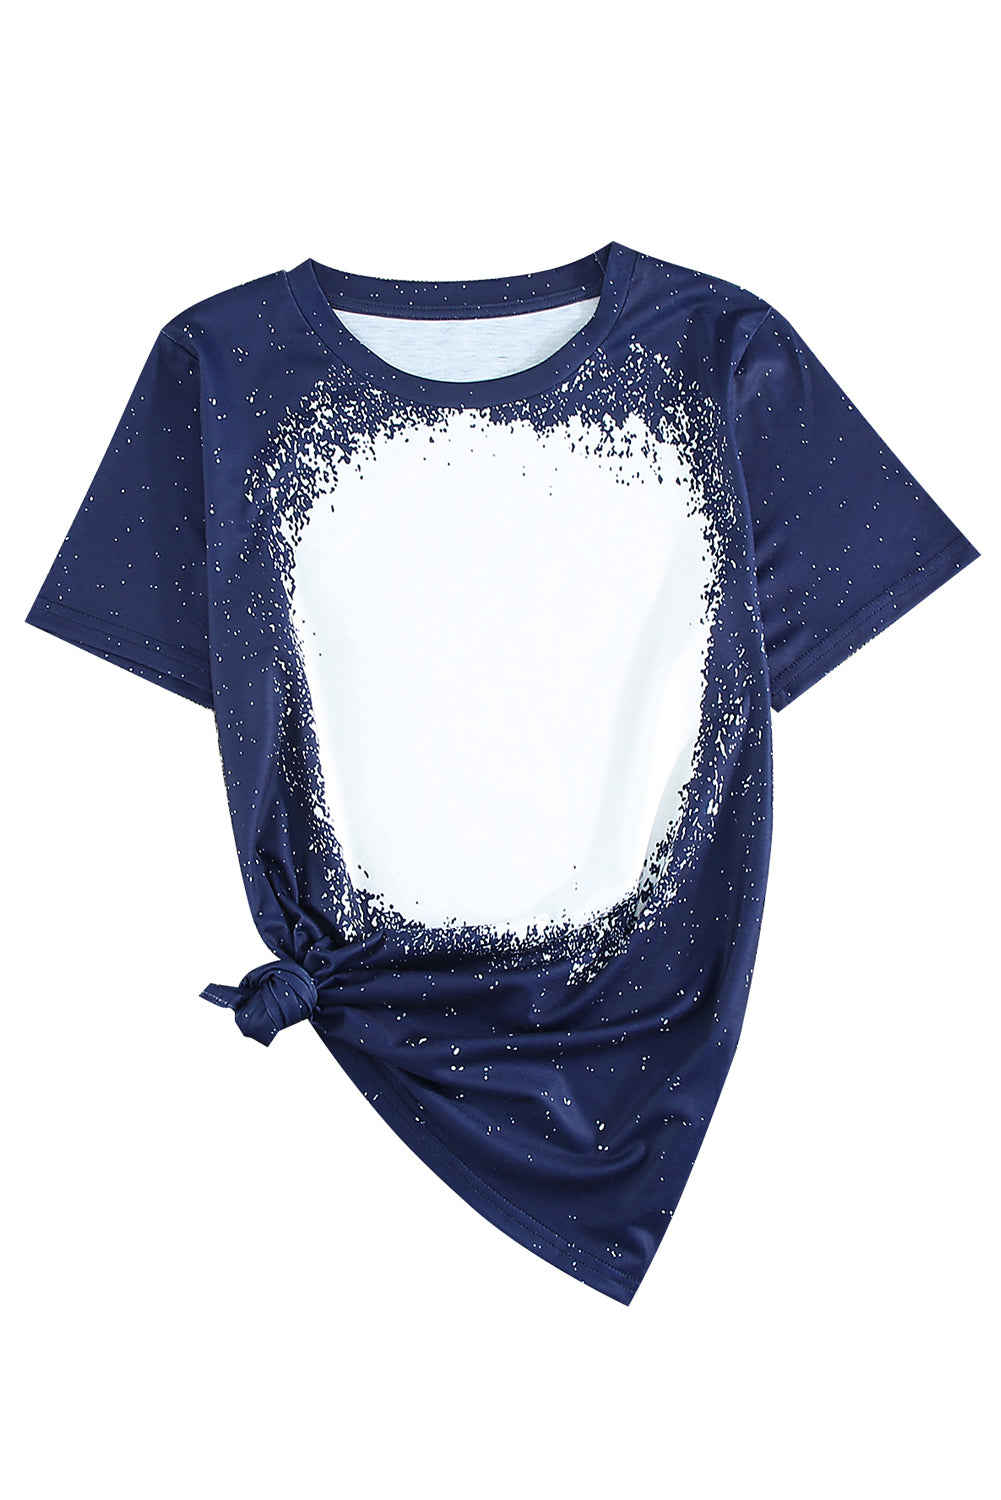 T-shirt a maniche corte con scollo tondo tinto in massa blu scuro